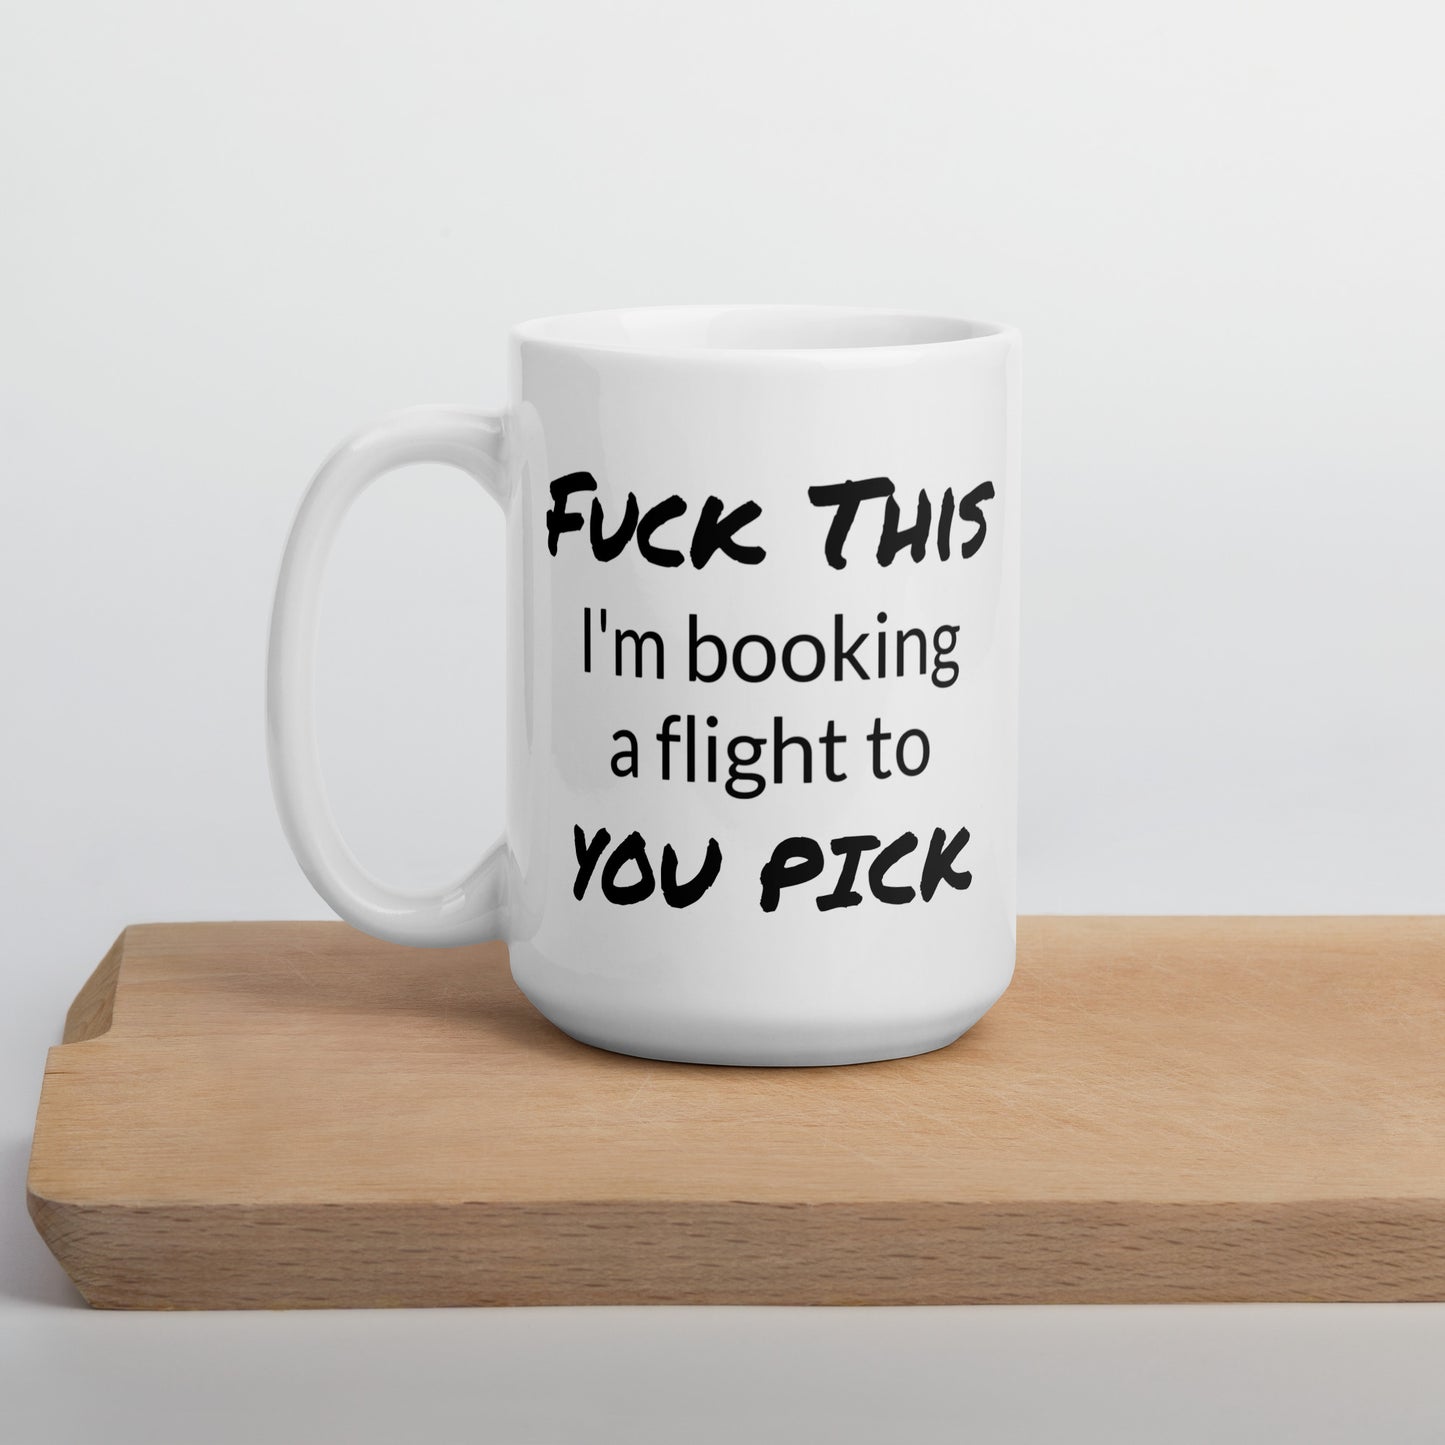 Custom Travel Lover Coffee Mug, Travel Lover Mug, Fuck This, Book a Flight, Travel Lover Mug, Traveler Gift, Travel Lover Gifts